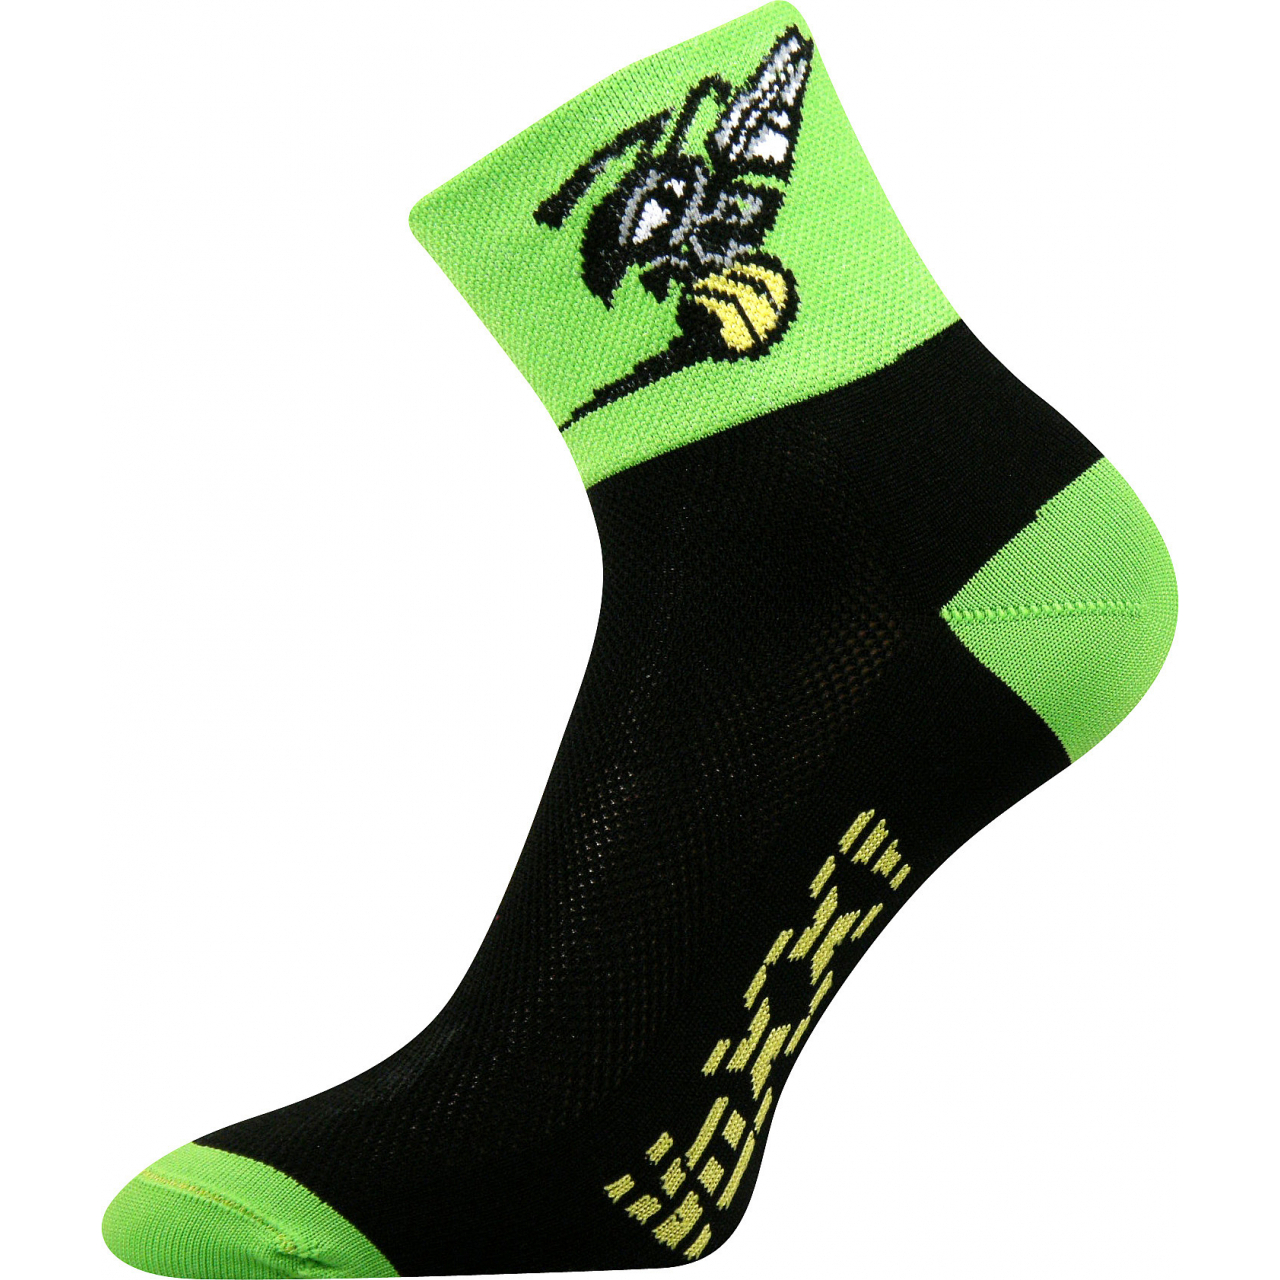 Ponožky sportovní unisex Voxx Ralf X Vosa - černé-zelené, 43-46